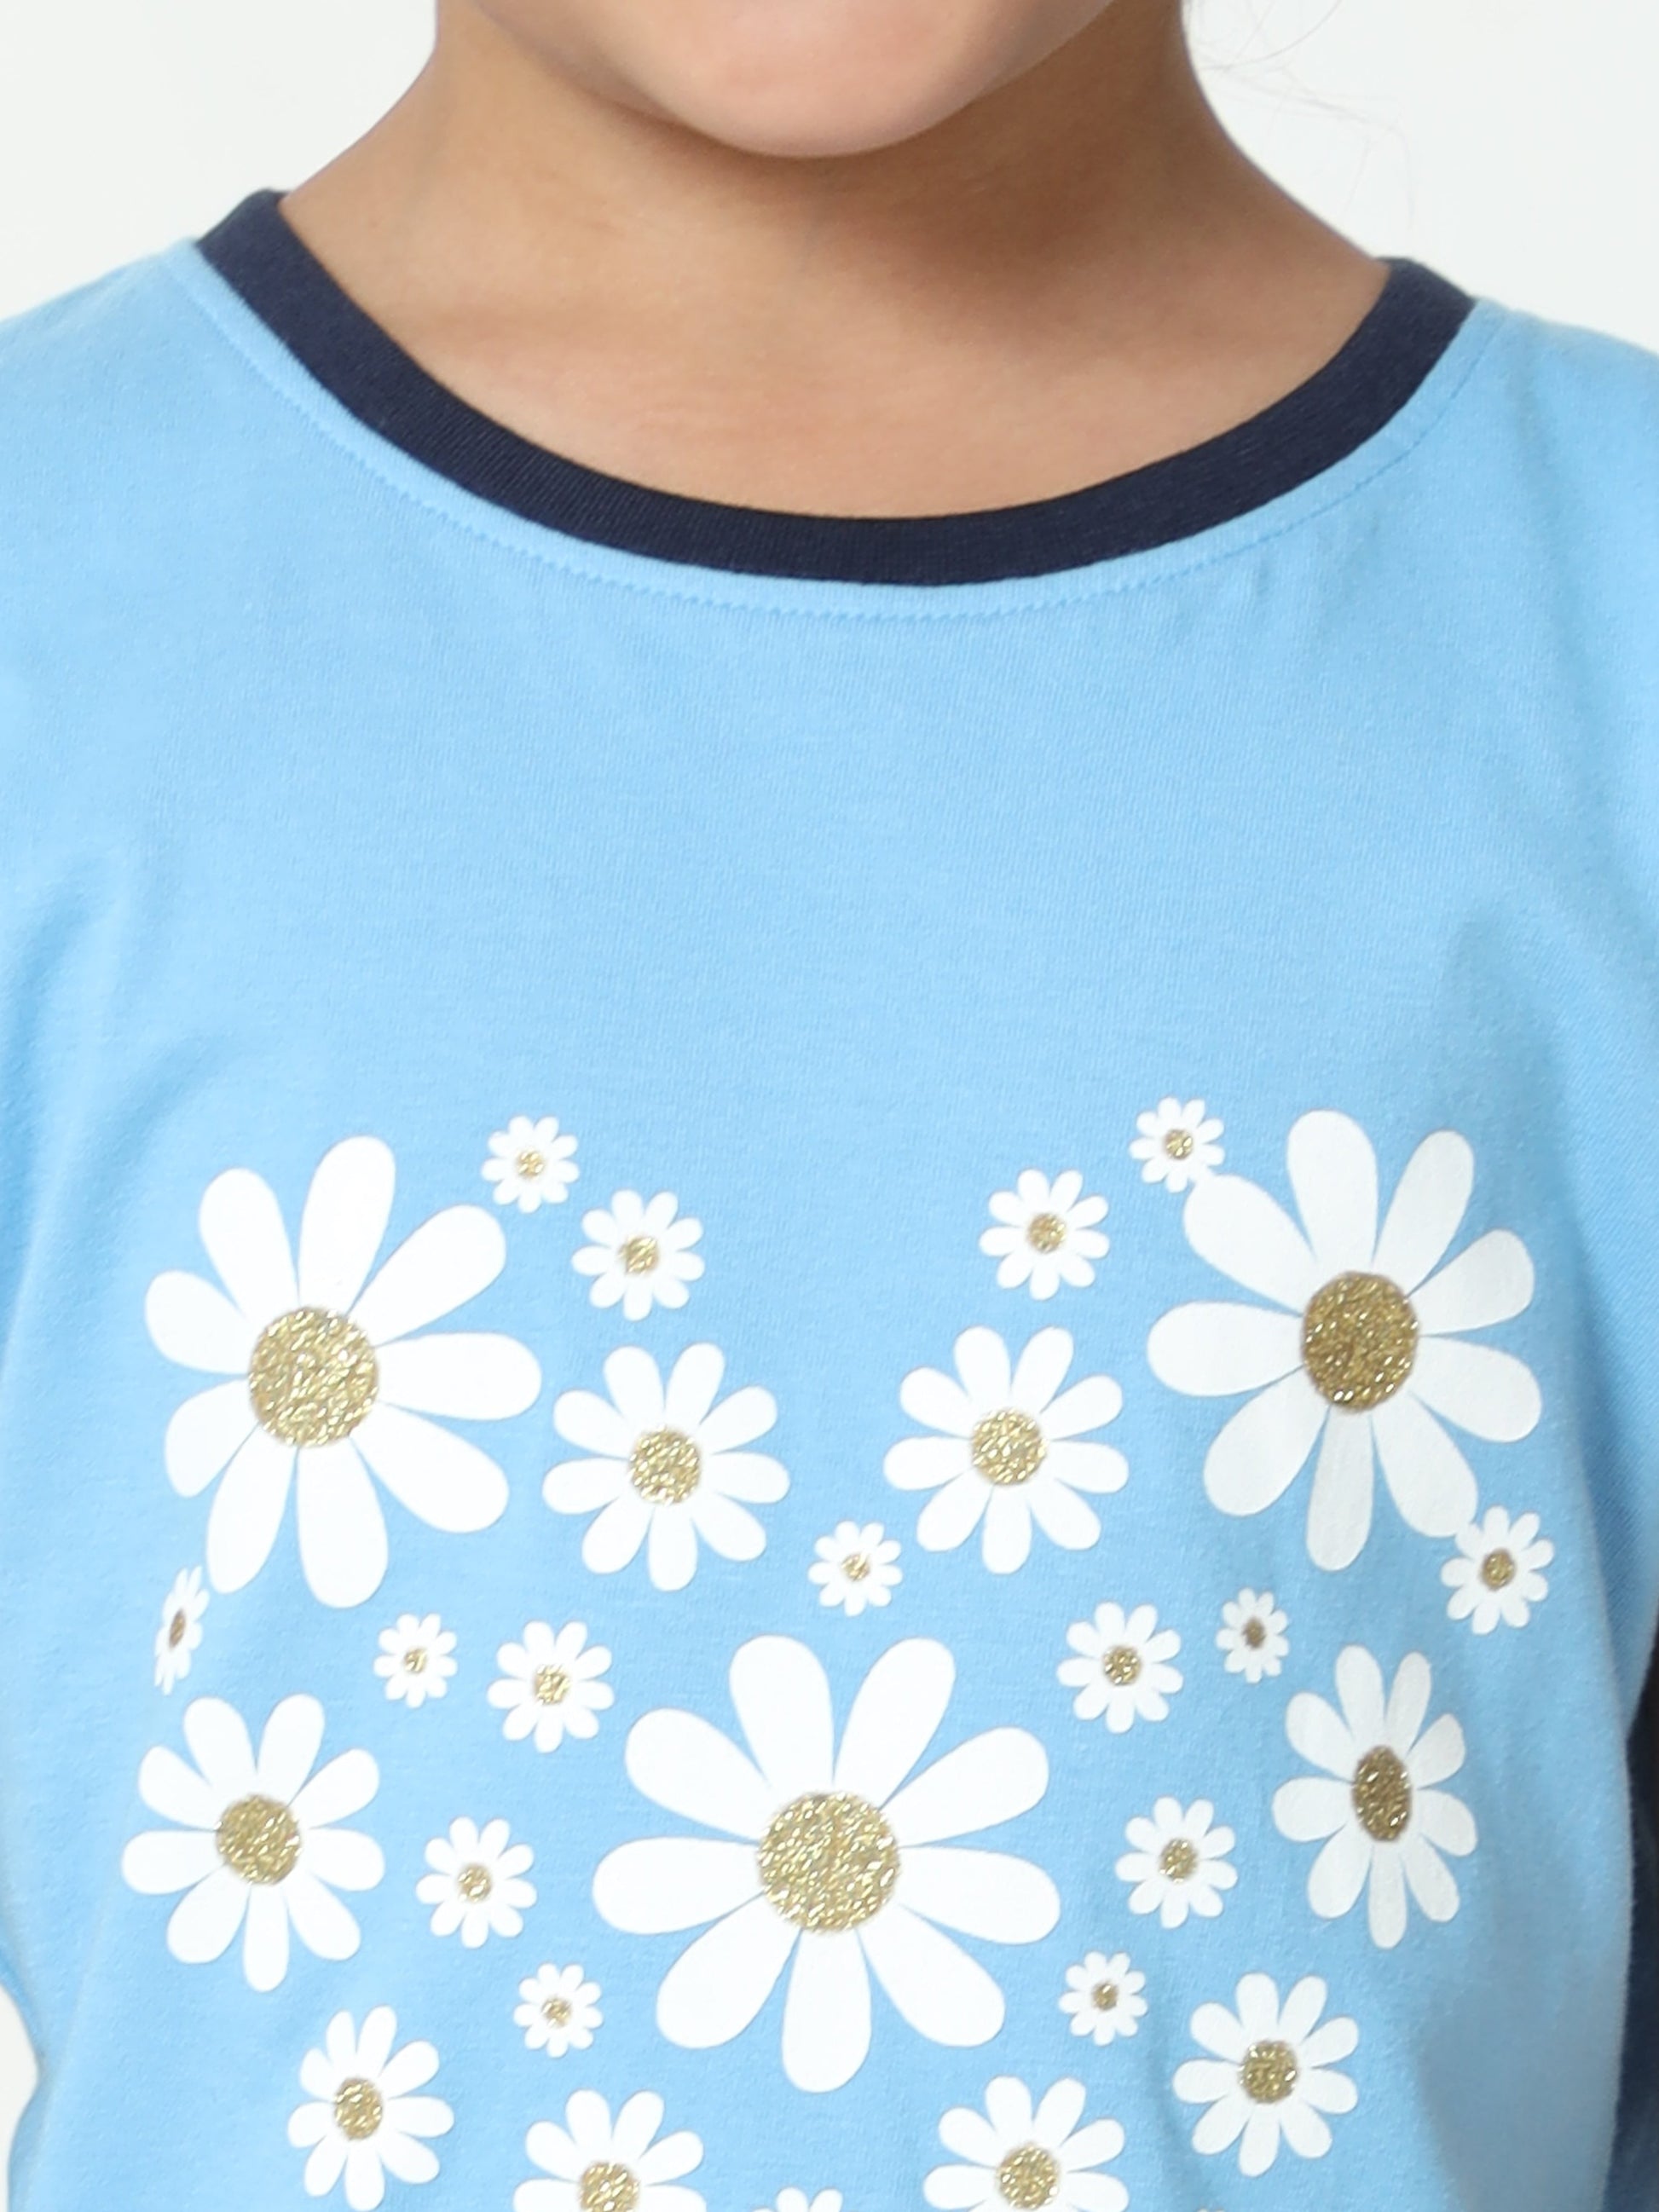 Sun shine flower girl's T-Shirt